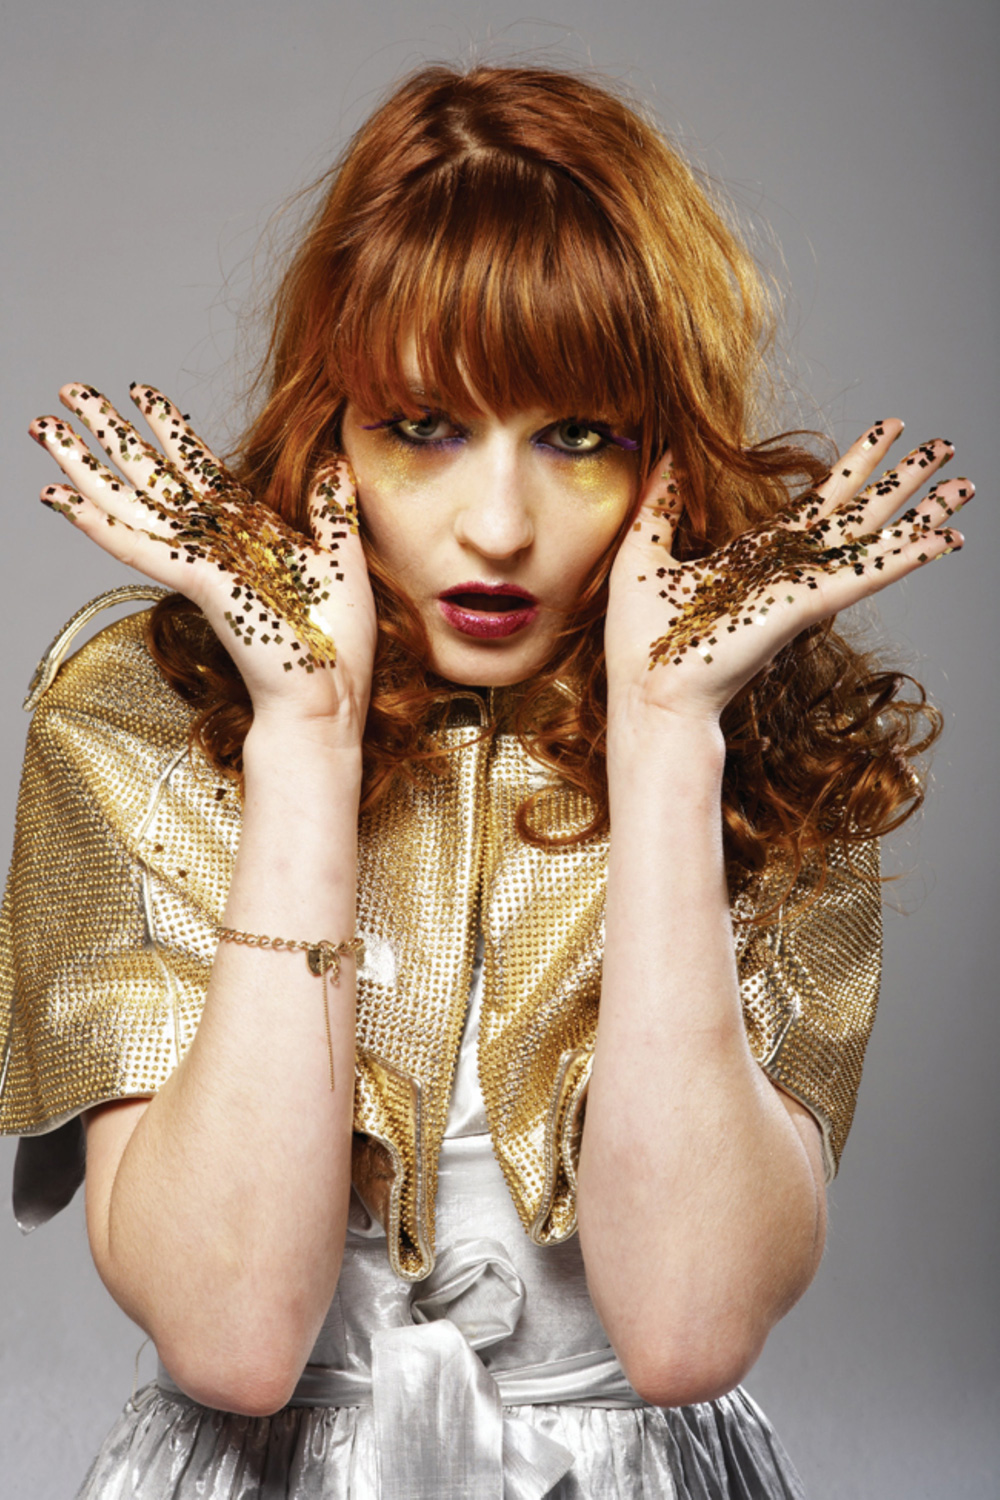 Lyt: Ny single fra Florence + the Machine